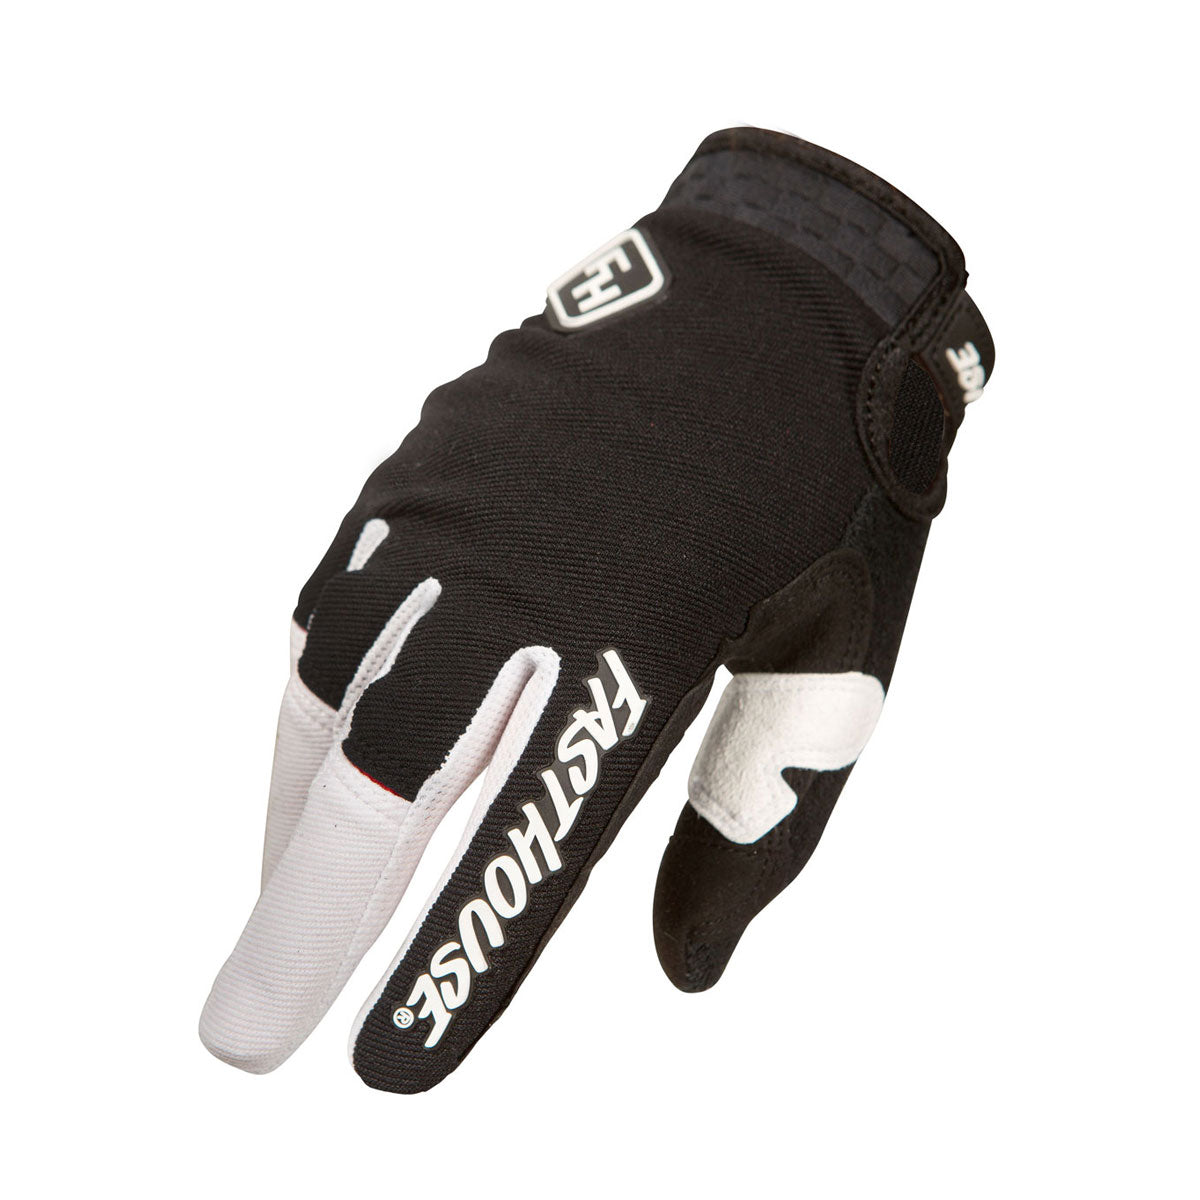 Speed Style Ridgeline+ Youth Glove - Black/White